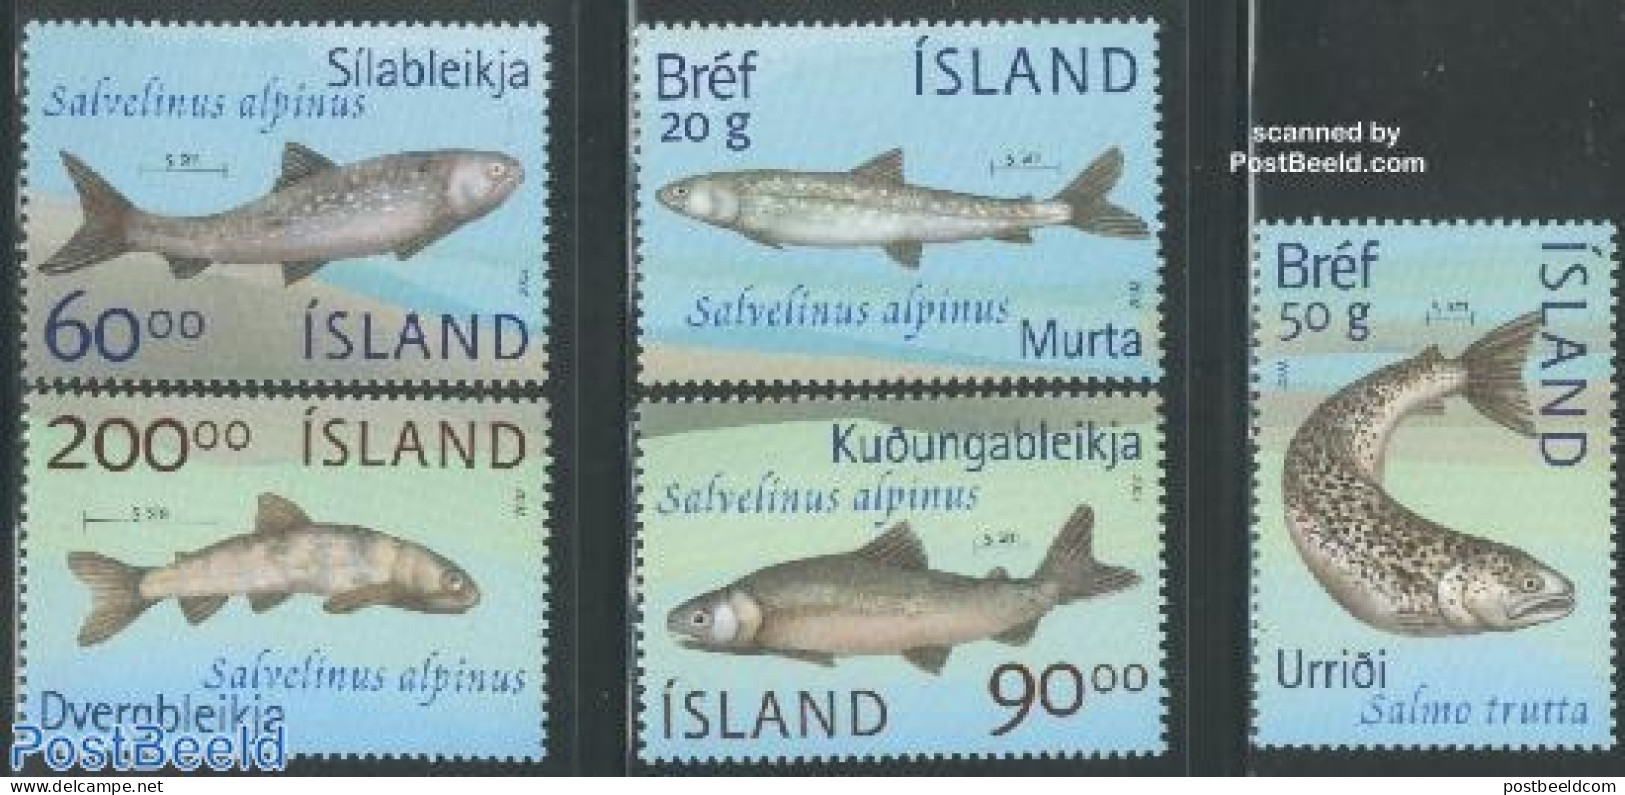 Iceland 2002 Fish 5v, Mint NH, Nature - Fish - Ongebruikt